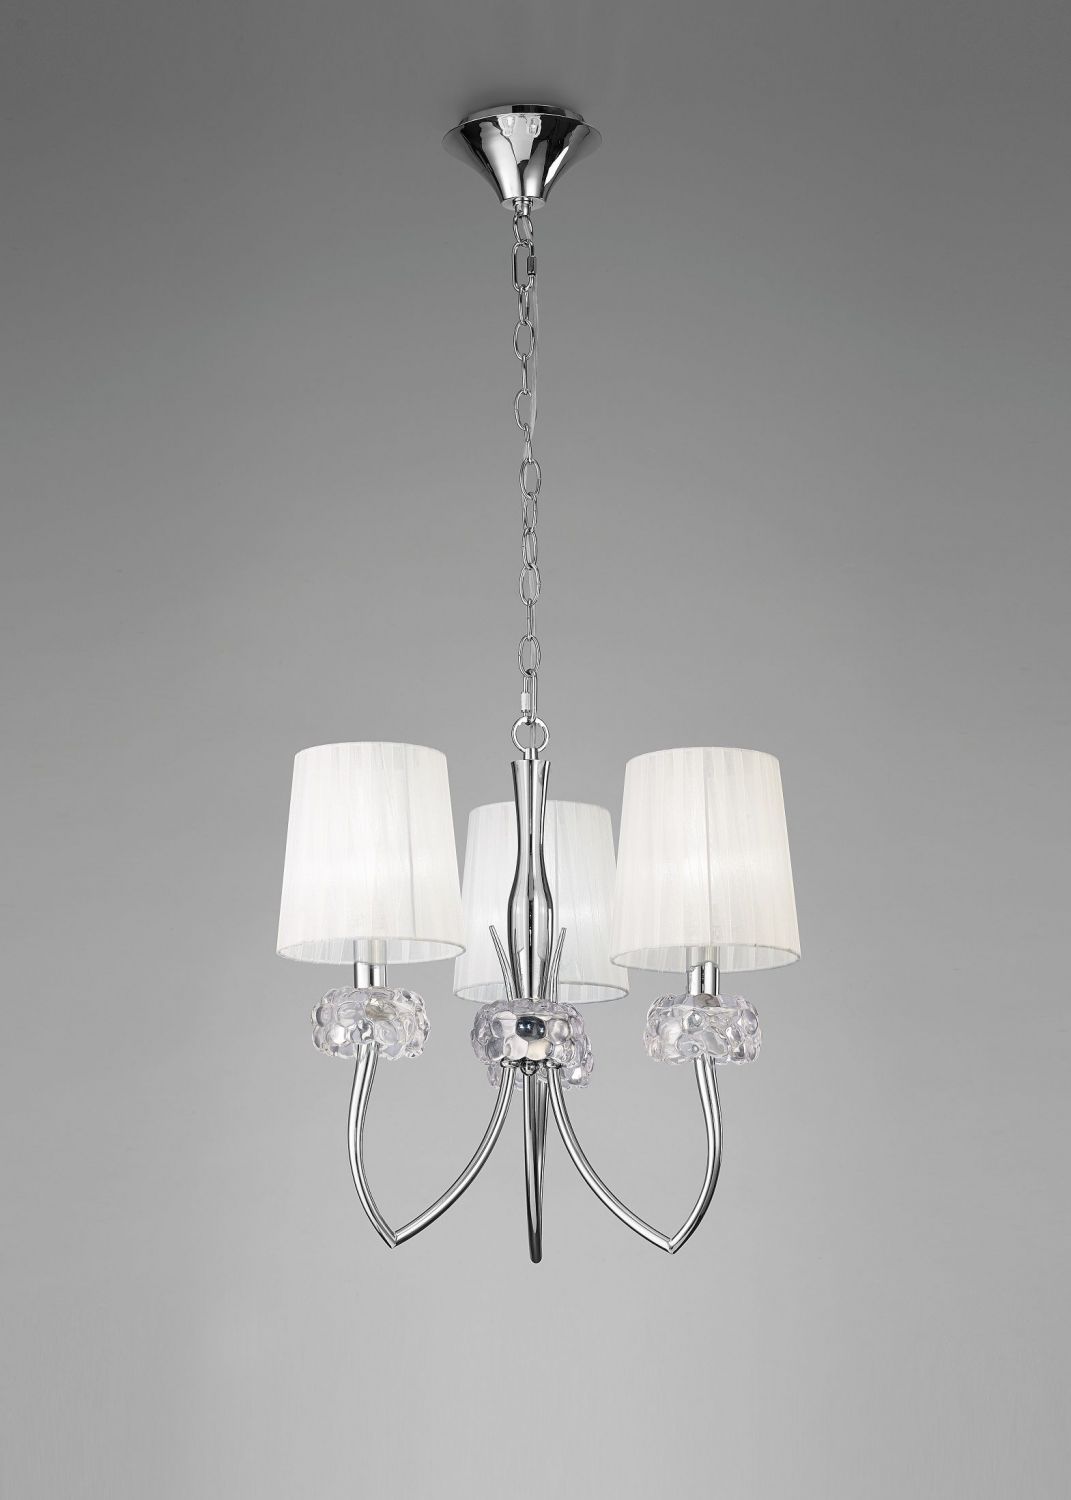 Moderní elegantní lustr LOEWE 4633 - Osvětlení.com